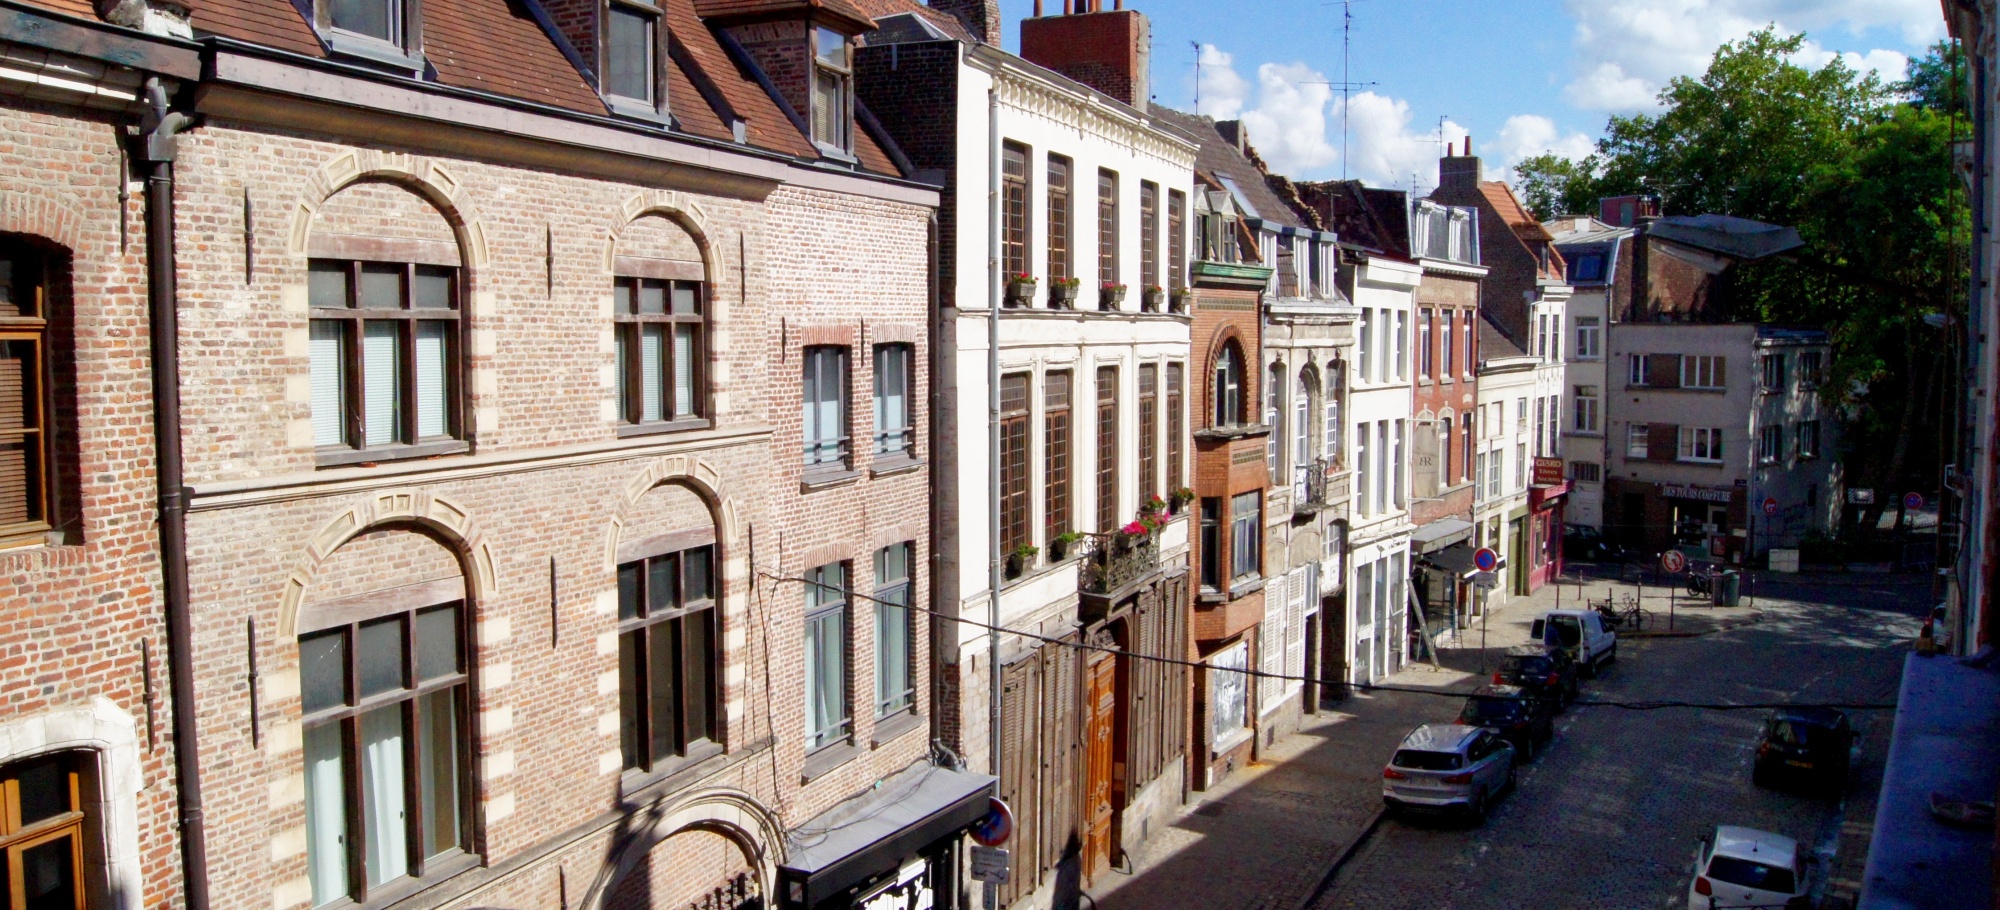 Appart Hôtel Lille Jacques - Lille